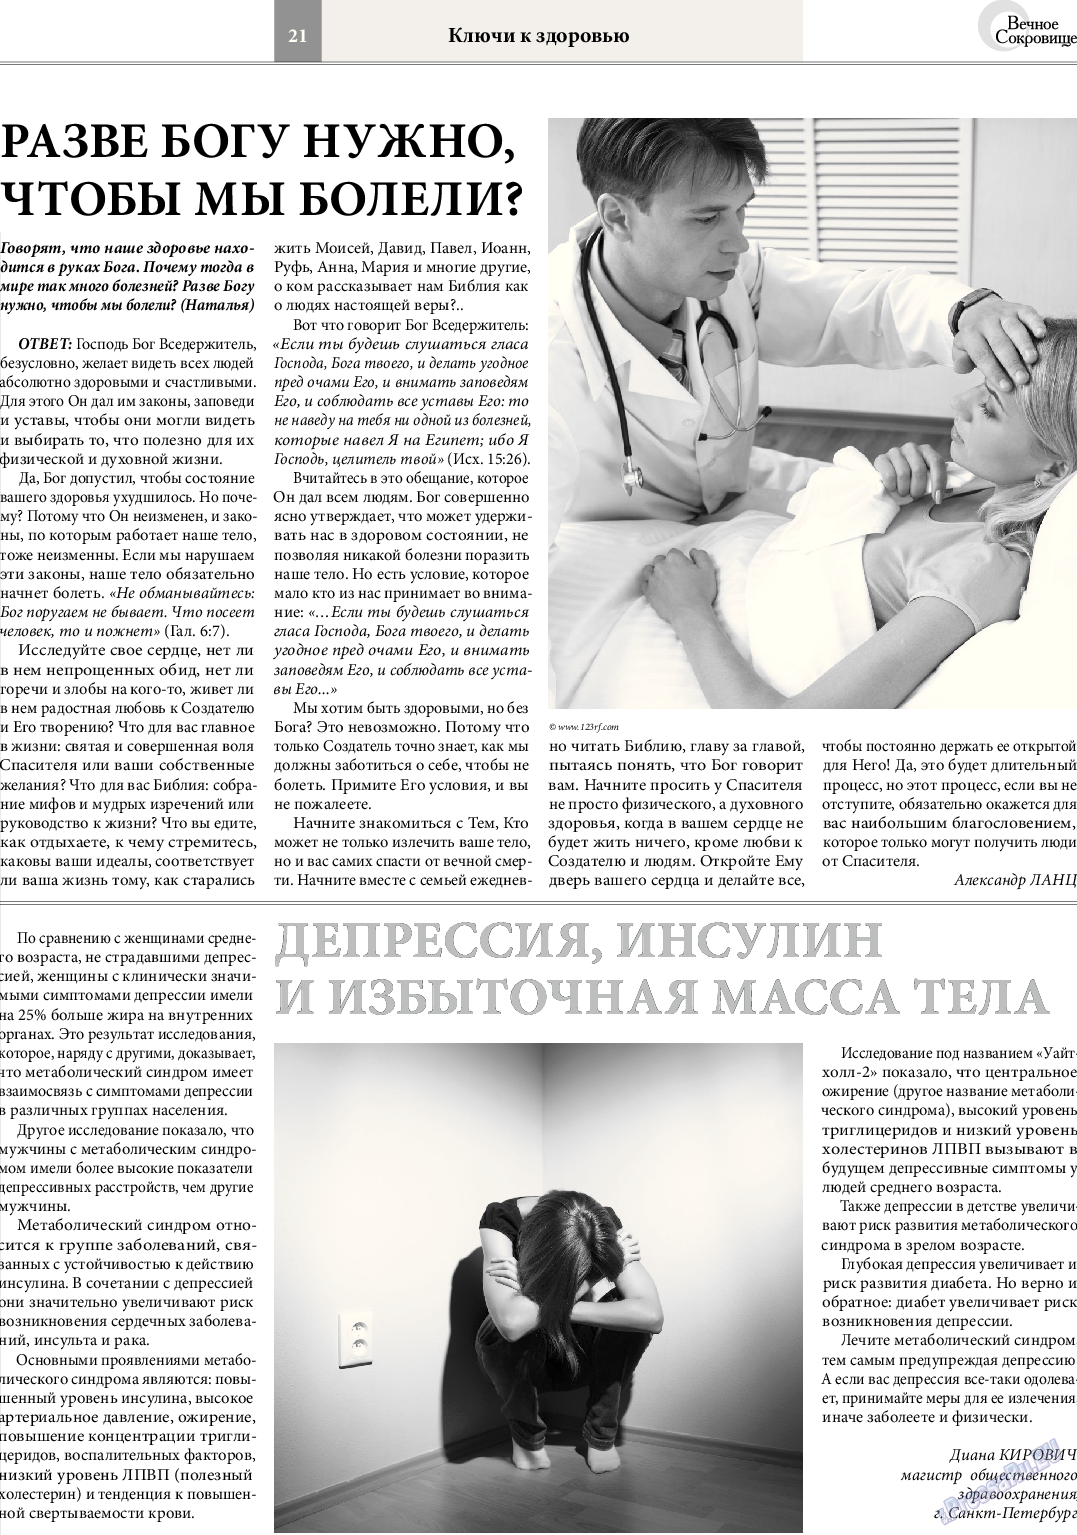 Вечное сокровище (газета). 2014 год, номер 2, стр. 21